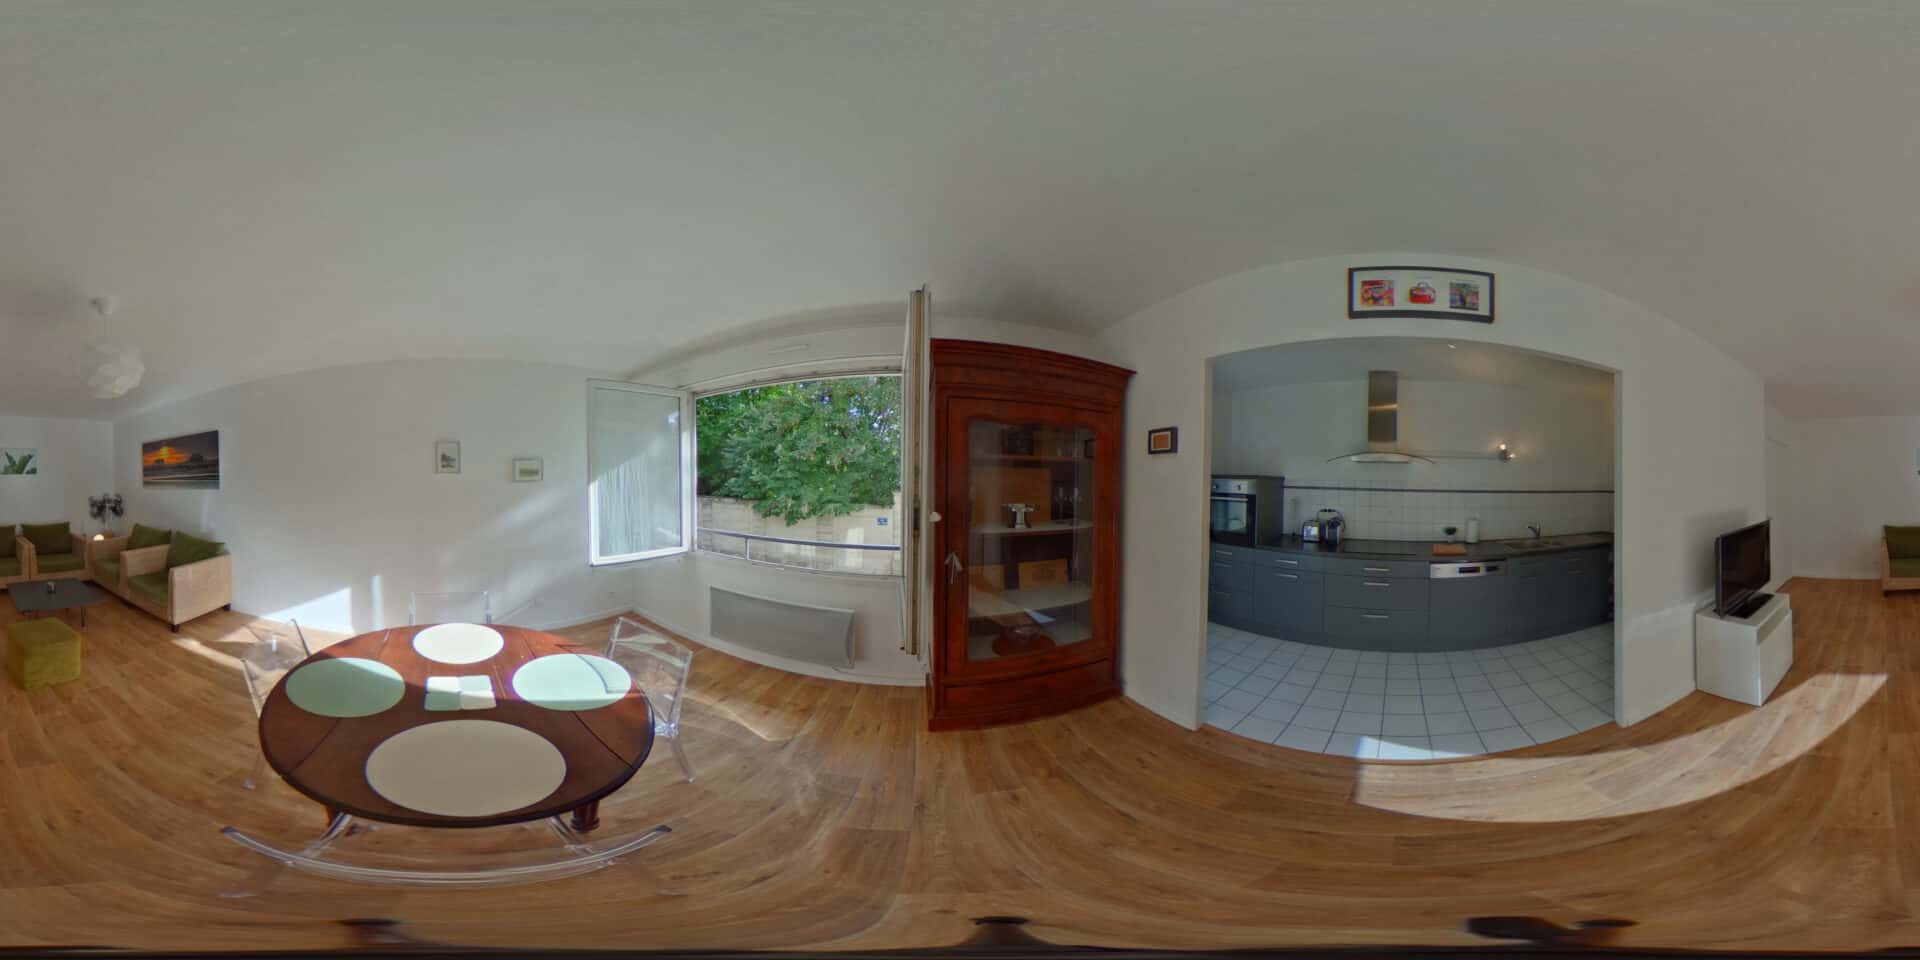 Photo equirectangulaire pour réalisation d'une visite virtuelle à 360°